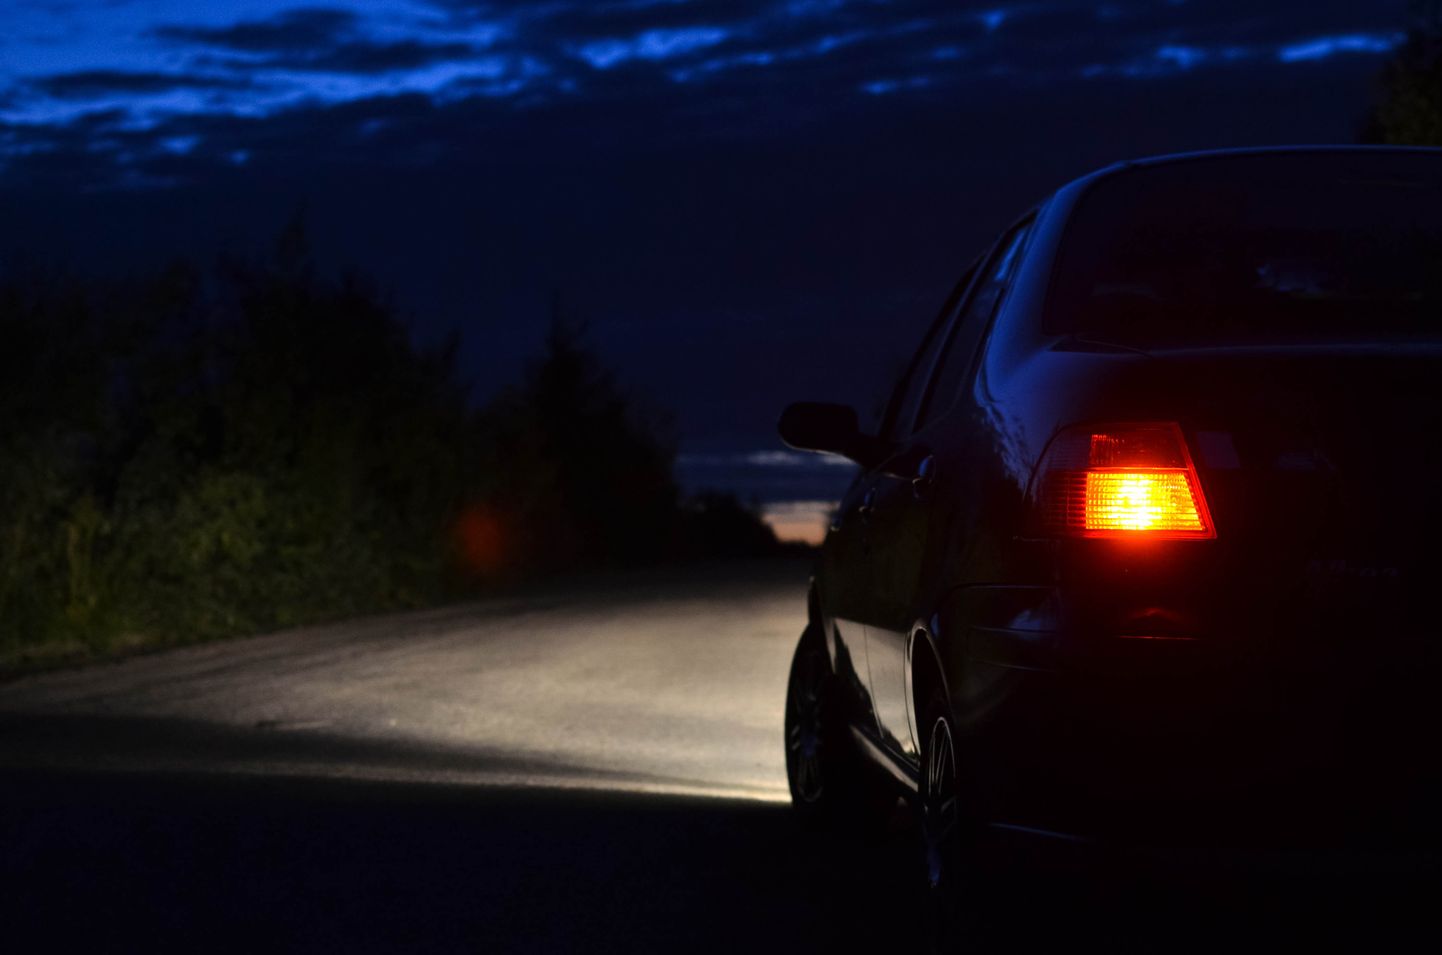 Машина на дороге в темное время суток. Снимок иллюстративный.